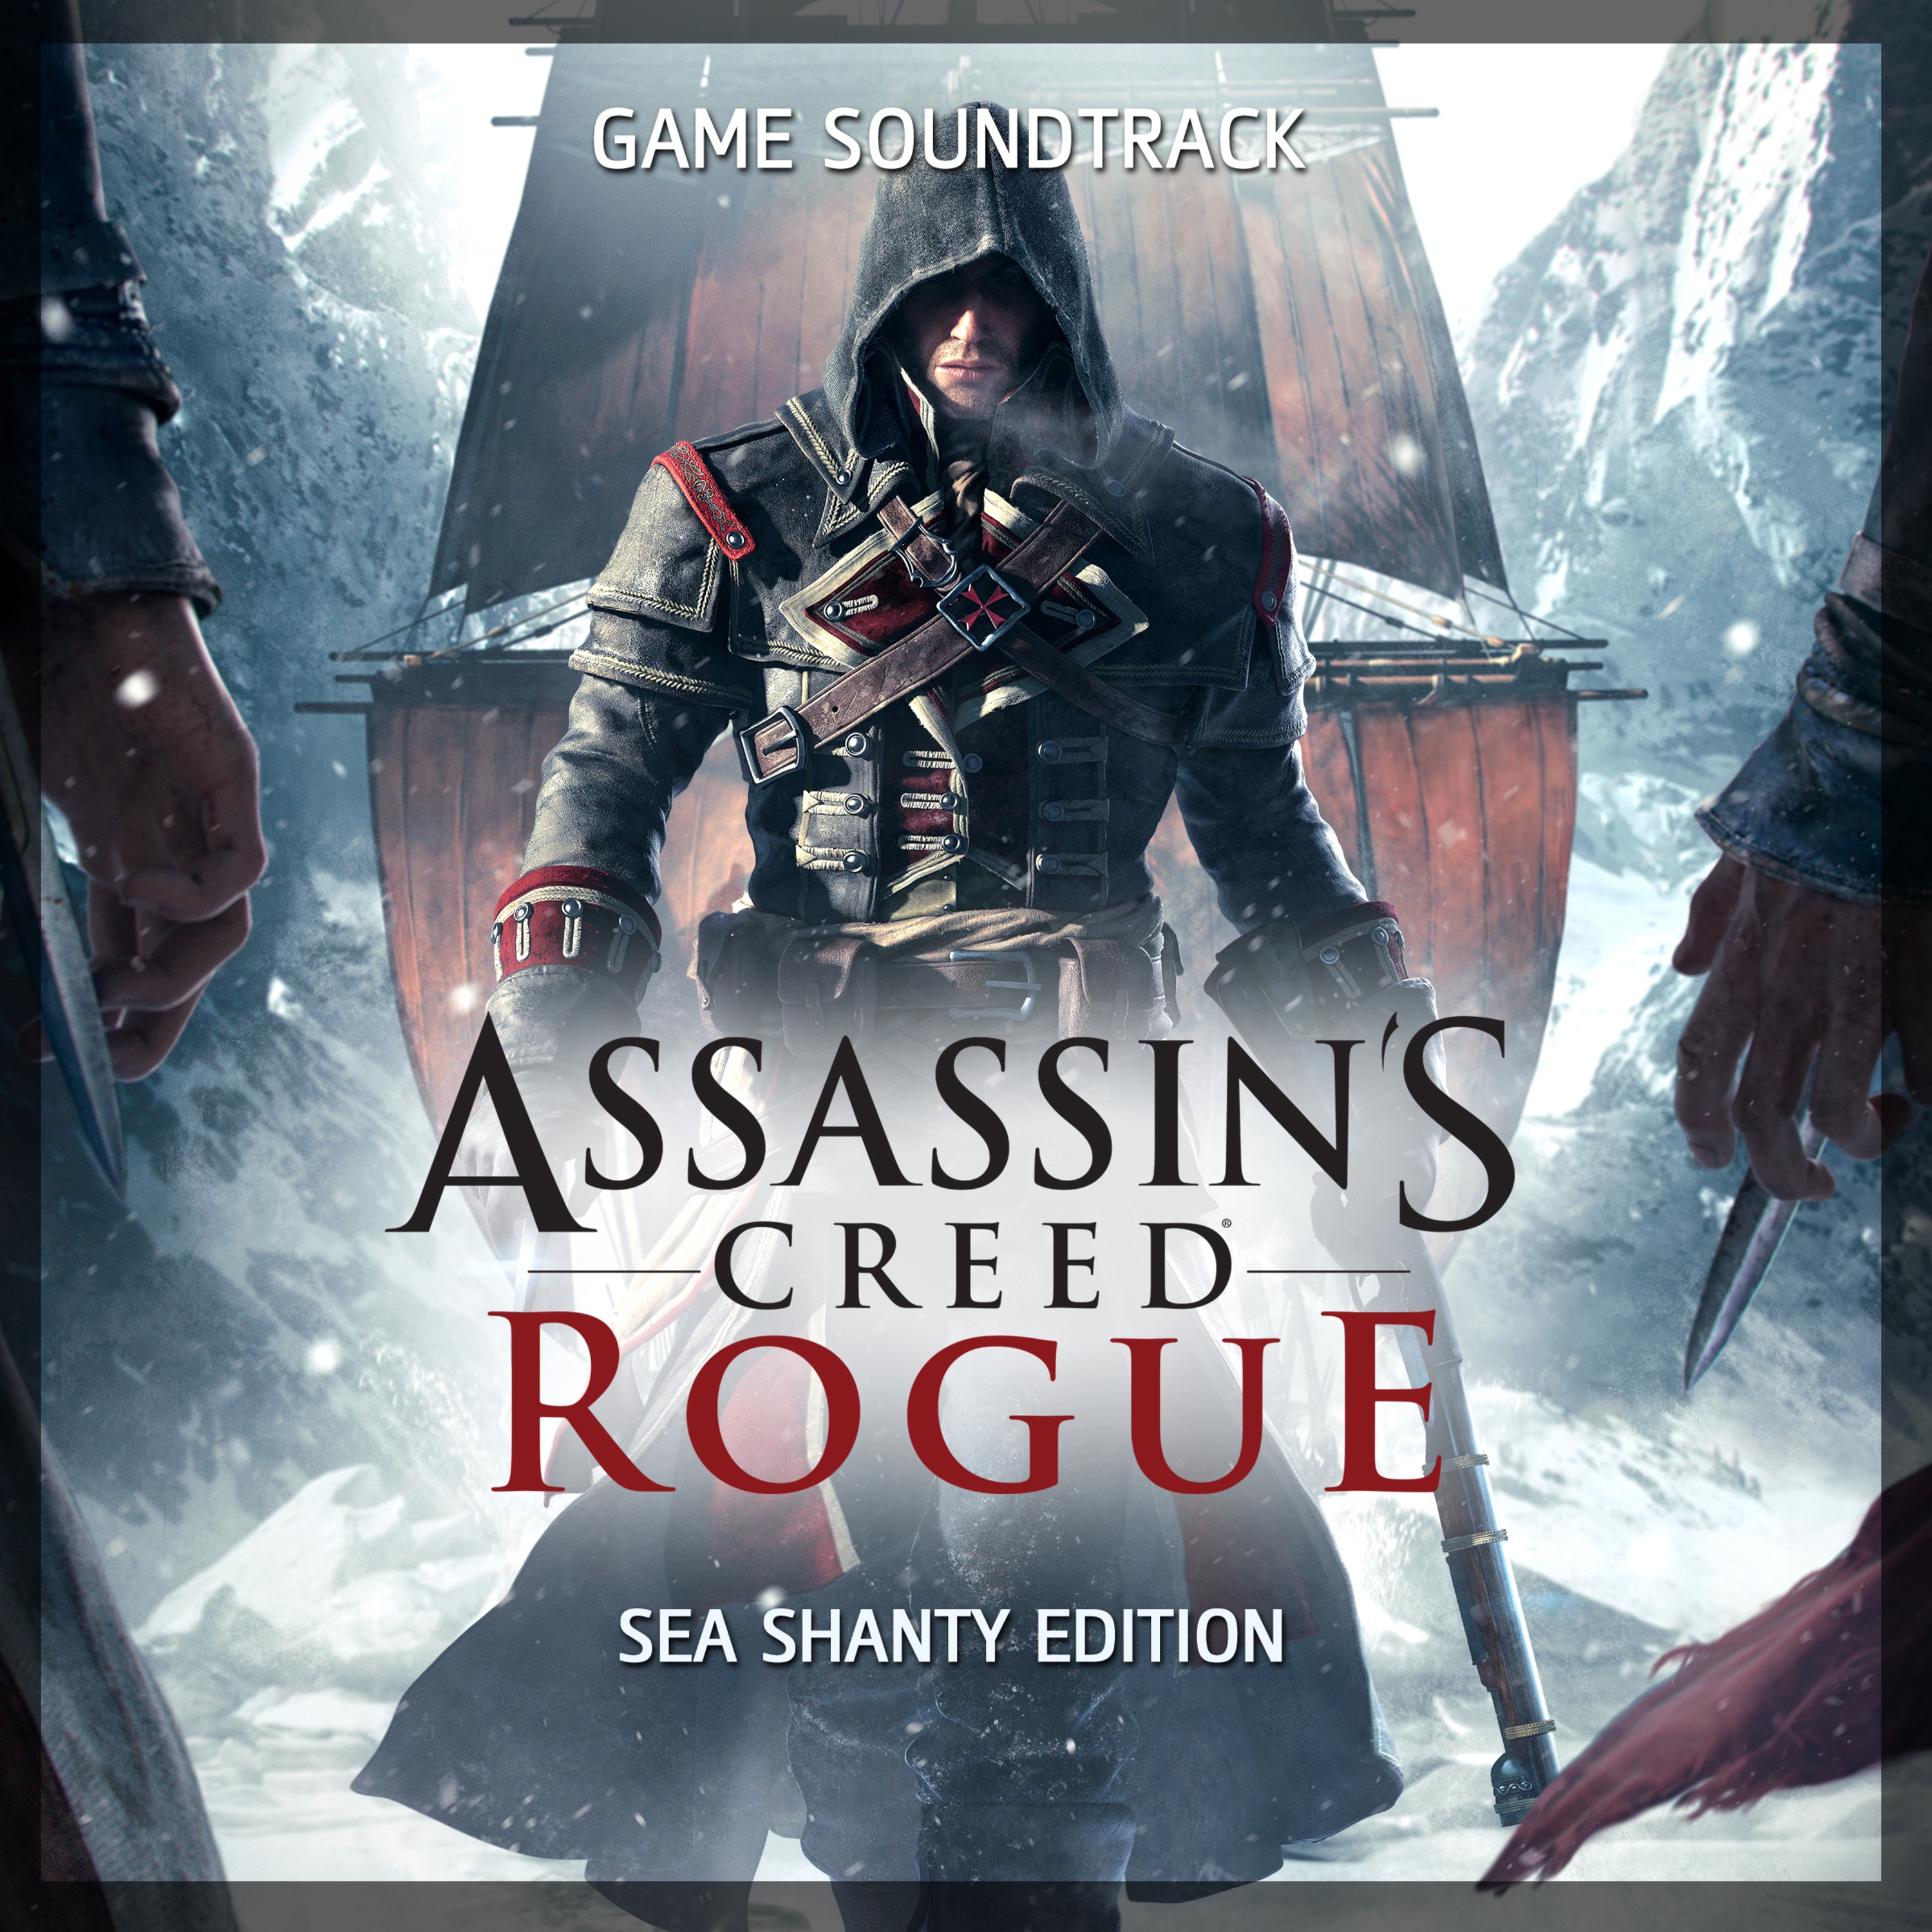 Саундтрек крид. Ассасин Крид Роуг обложка. Assassins Creed rouge обложка. Assassin s Creed Rogue обложка.